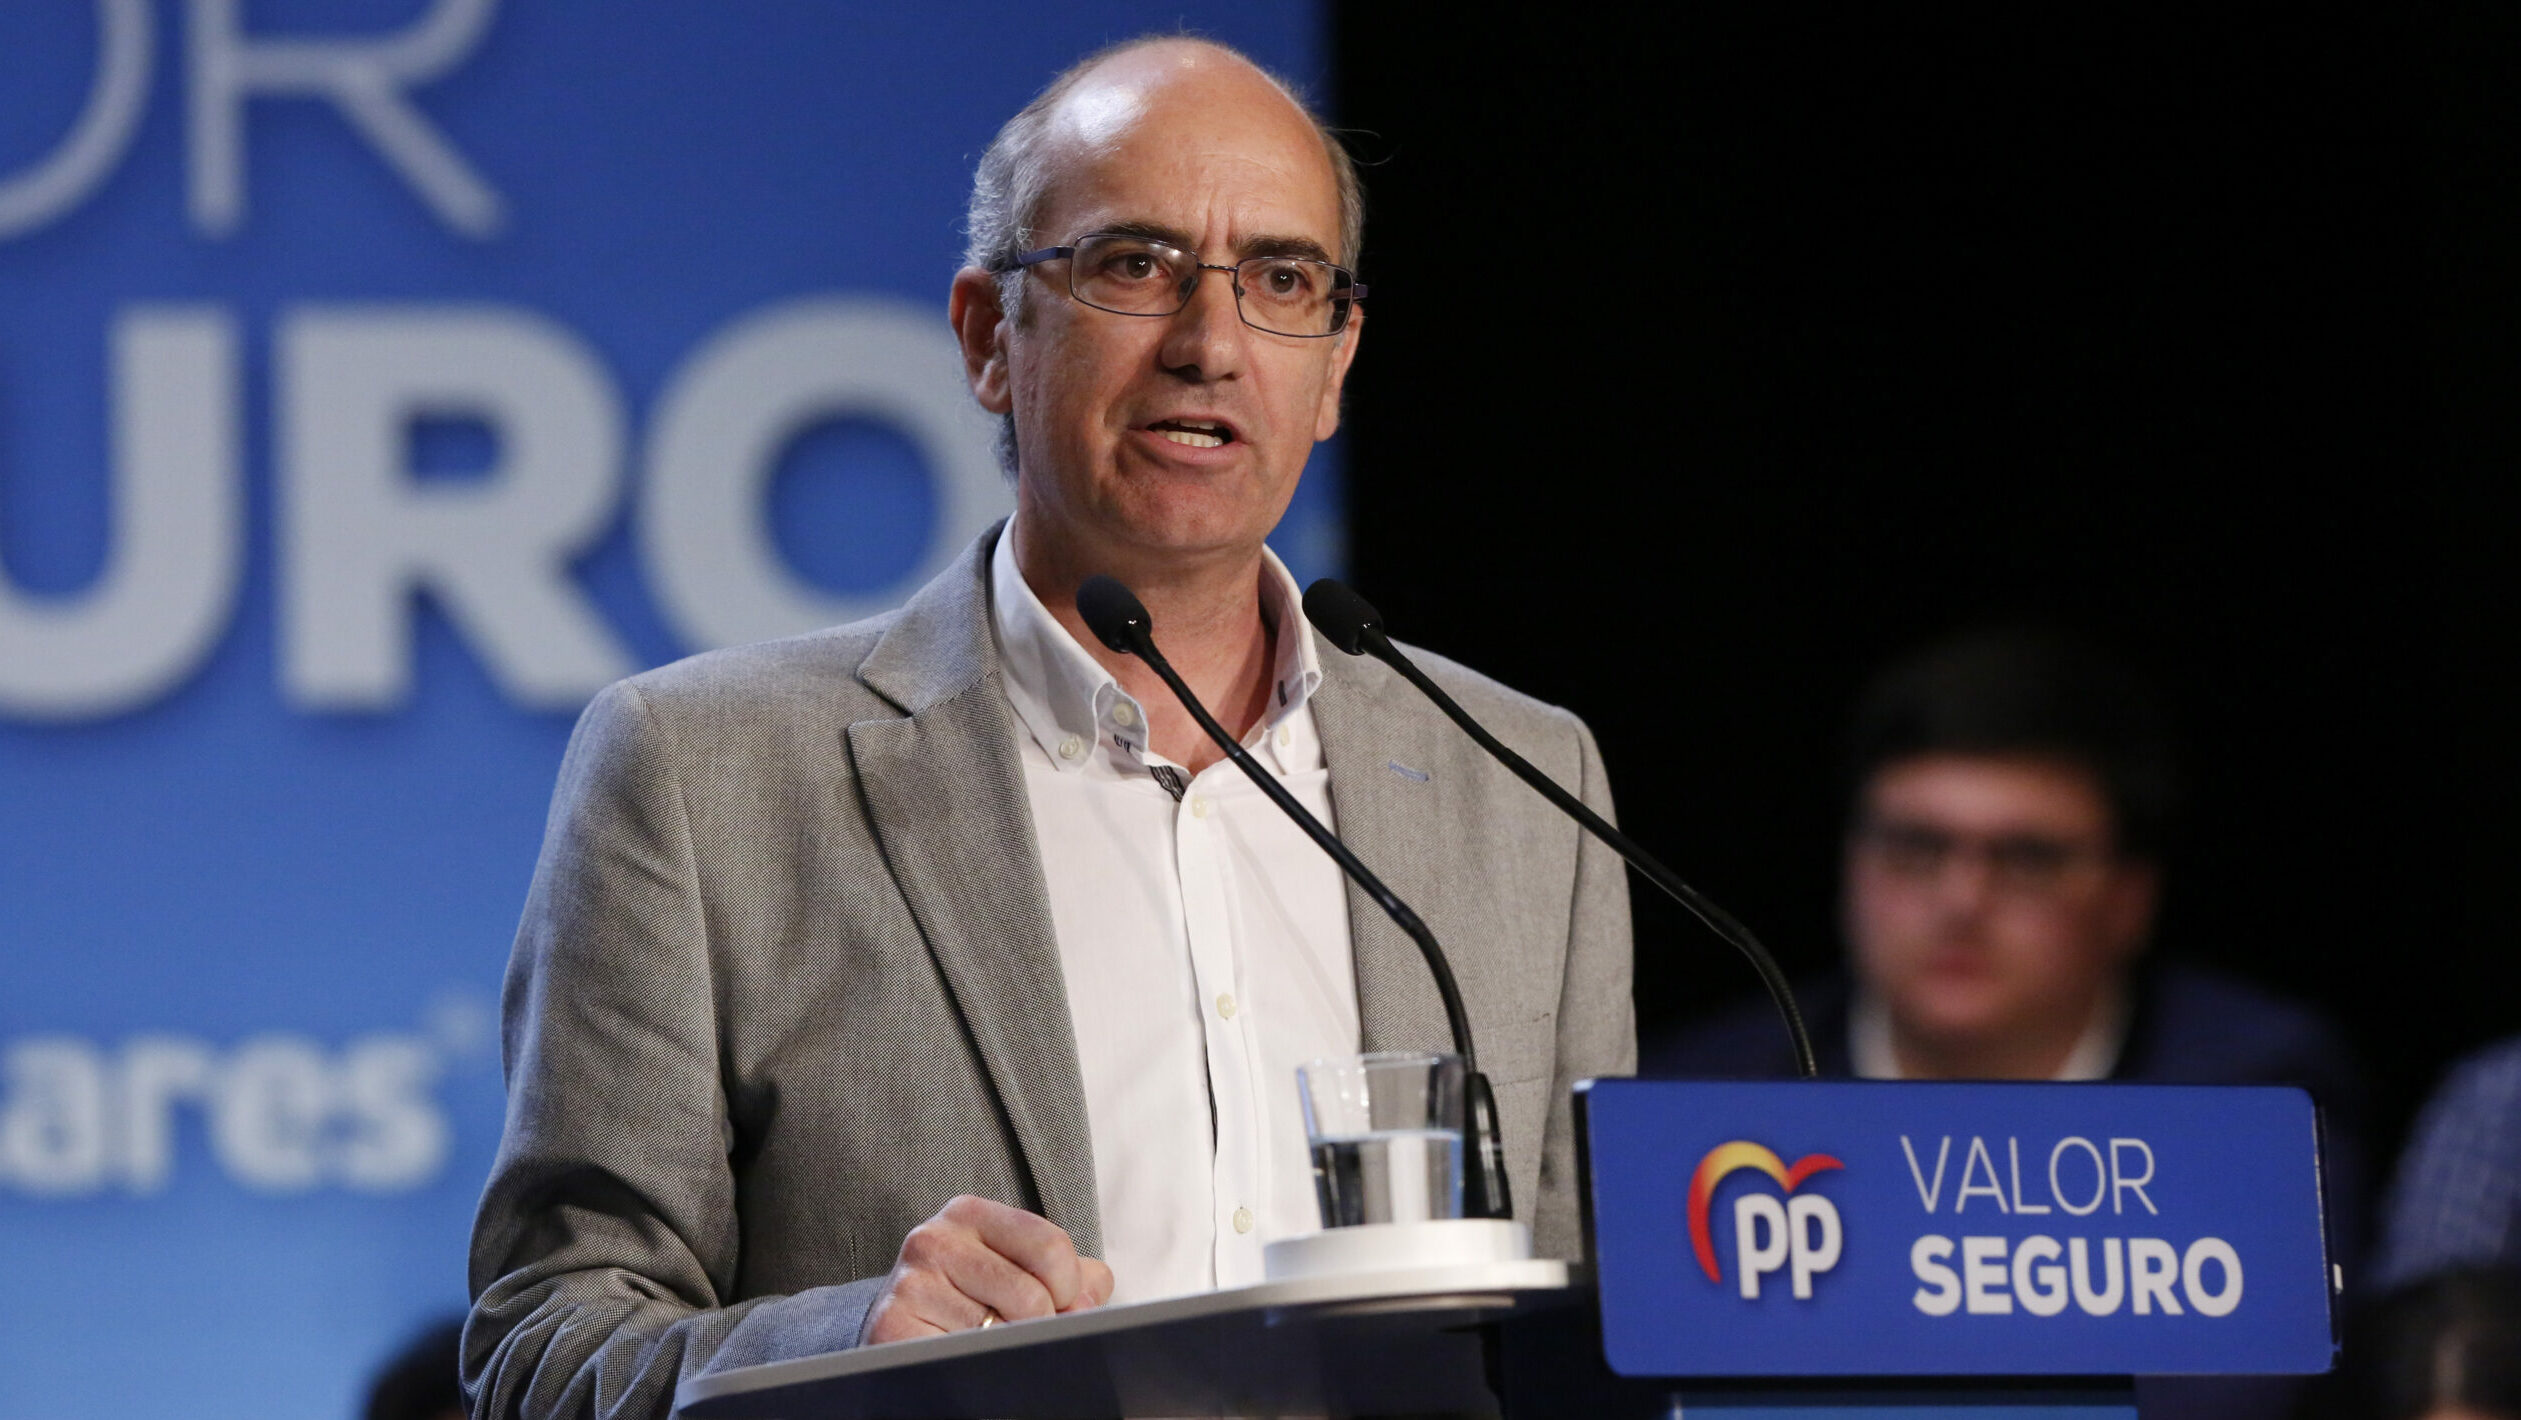 El presidente de la Diputación Salamanca se niega a dimitir tras su imputación